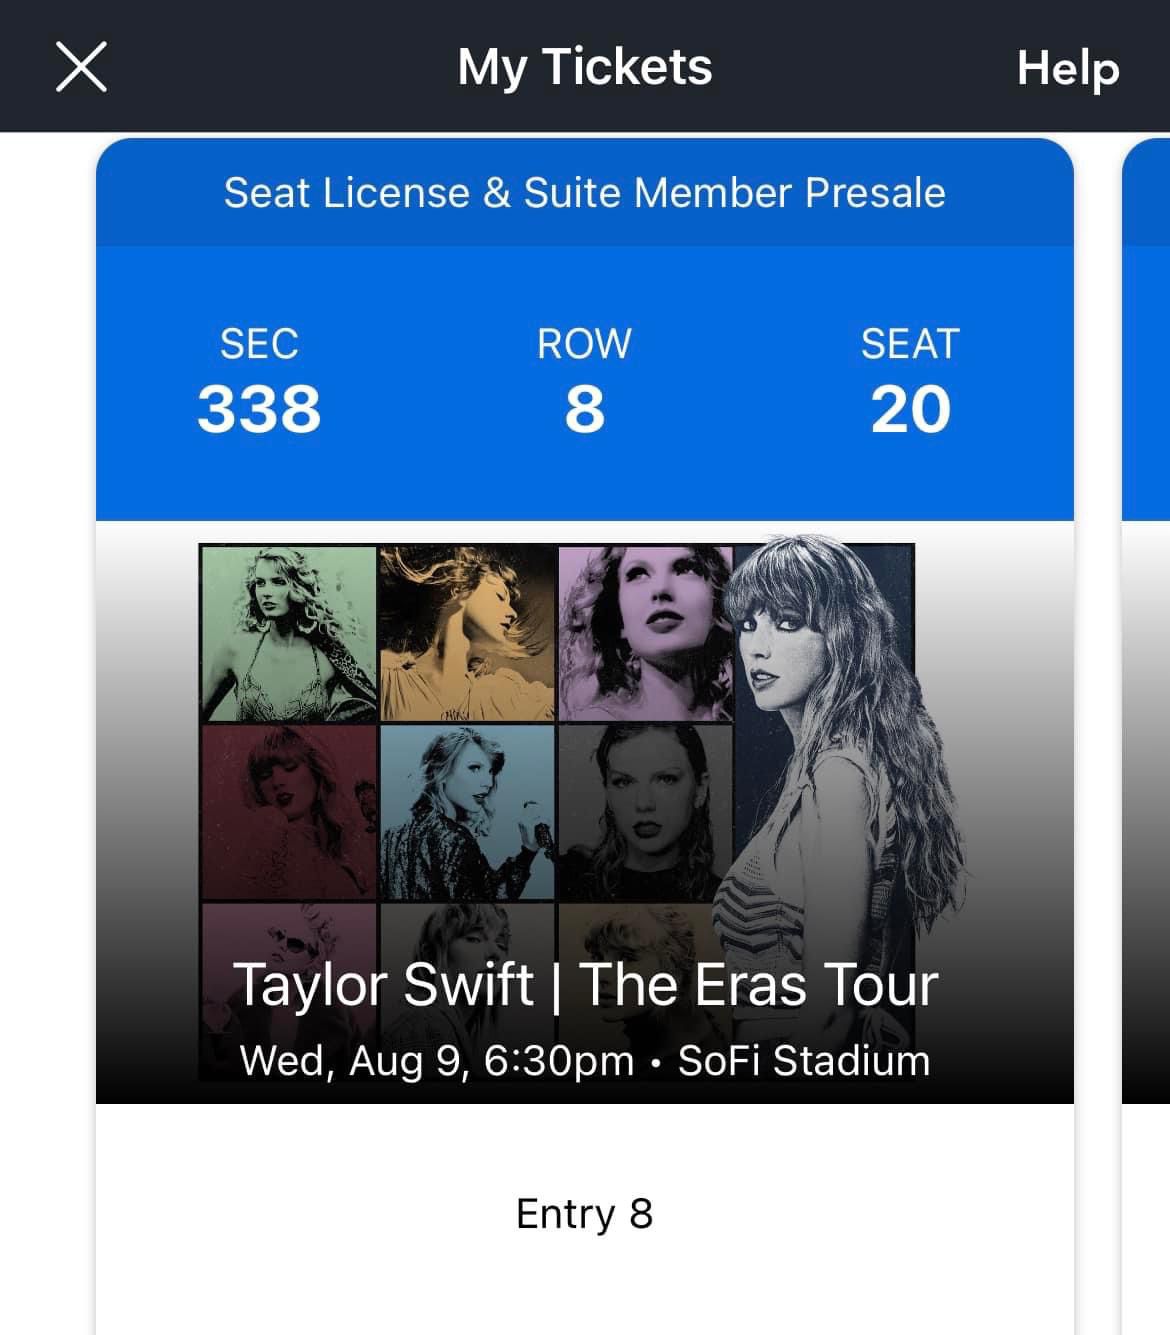 Taylor Swift The Eras Tour Aug 9 Sofi Stadium Tickets